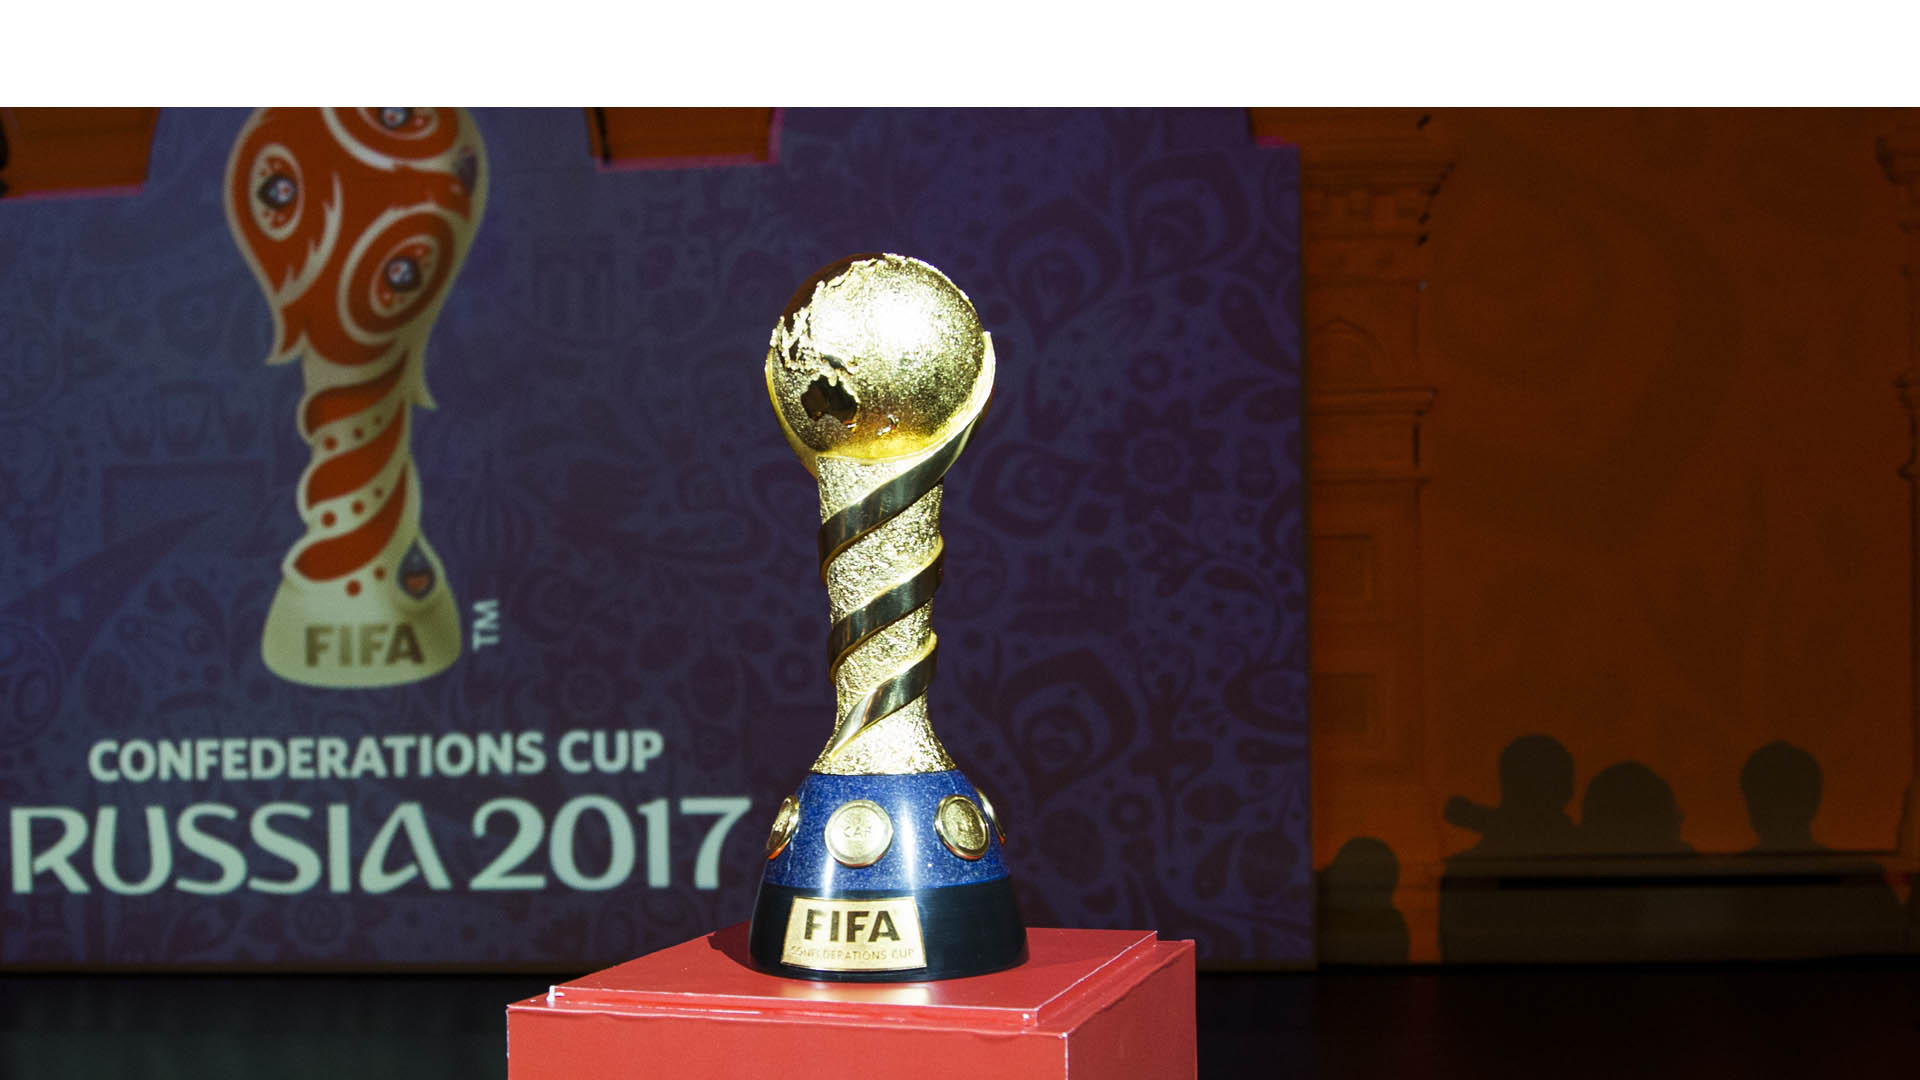 La FIFA tiene todo listo para empezar la venta de las entradas al evento deportivo que se disputará el próximo año como un ensayo para el Mundial Rusia 2018